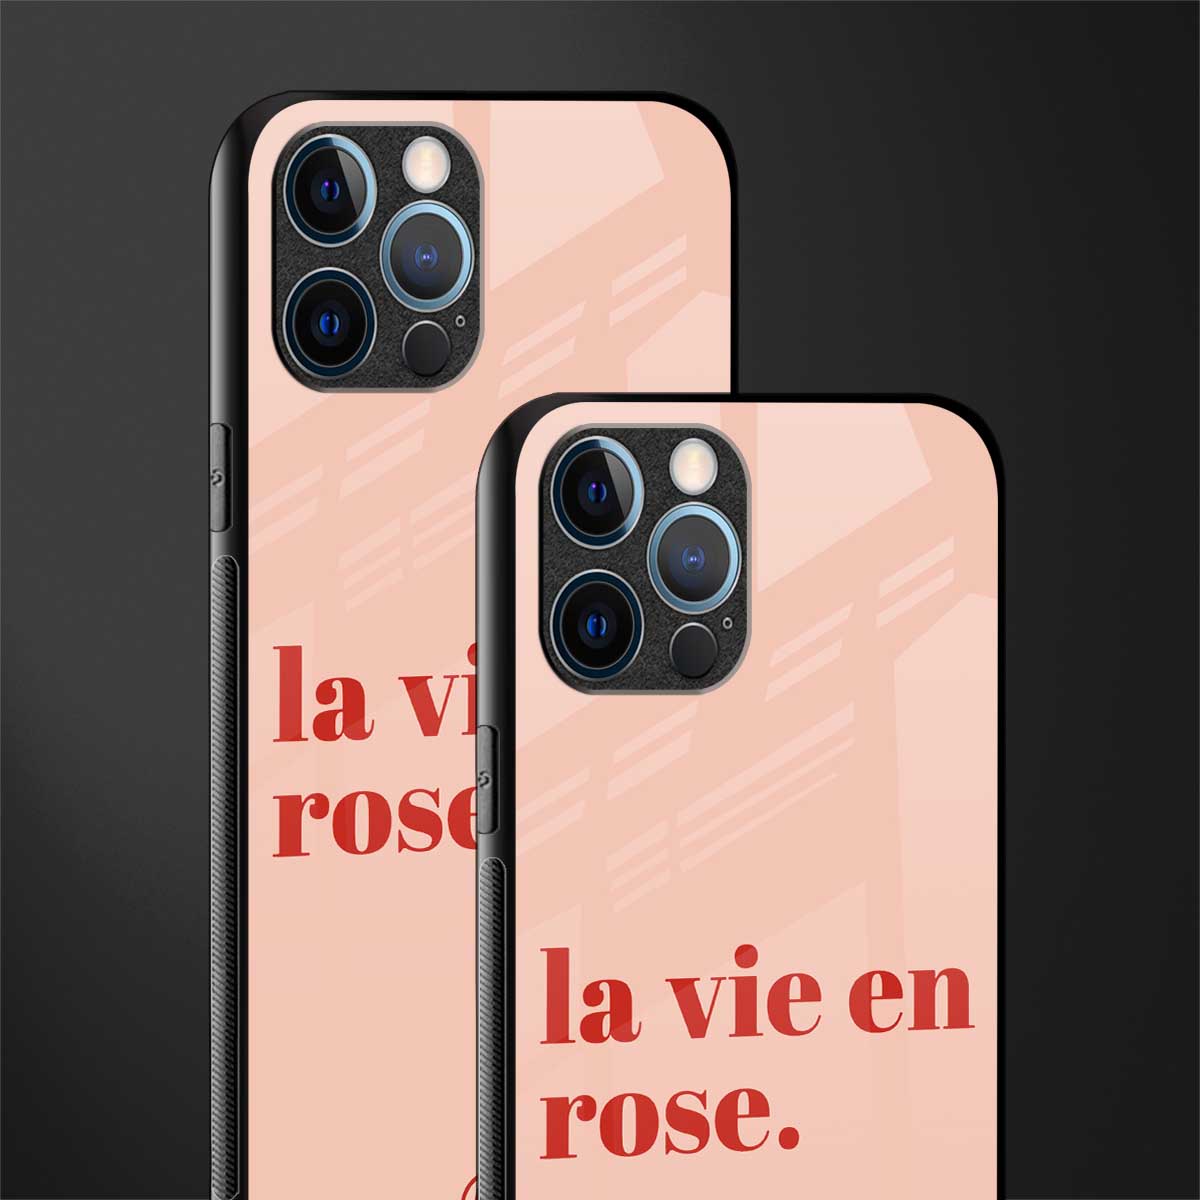 la vie en rose quote glass case for iphone 13 pro max image-2